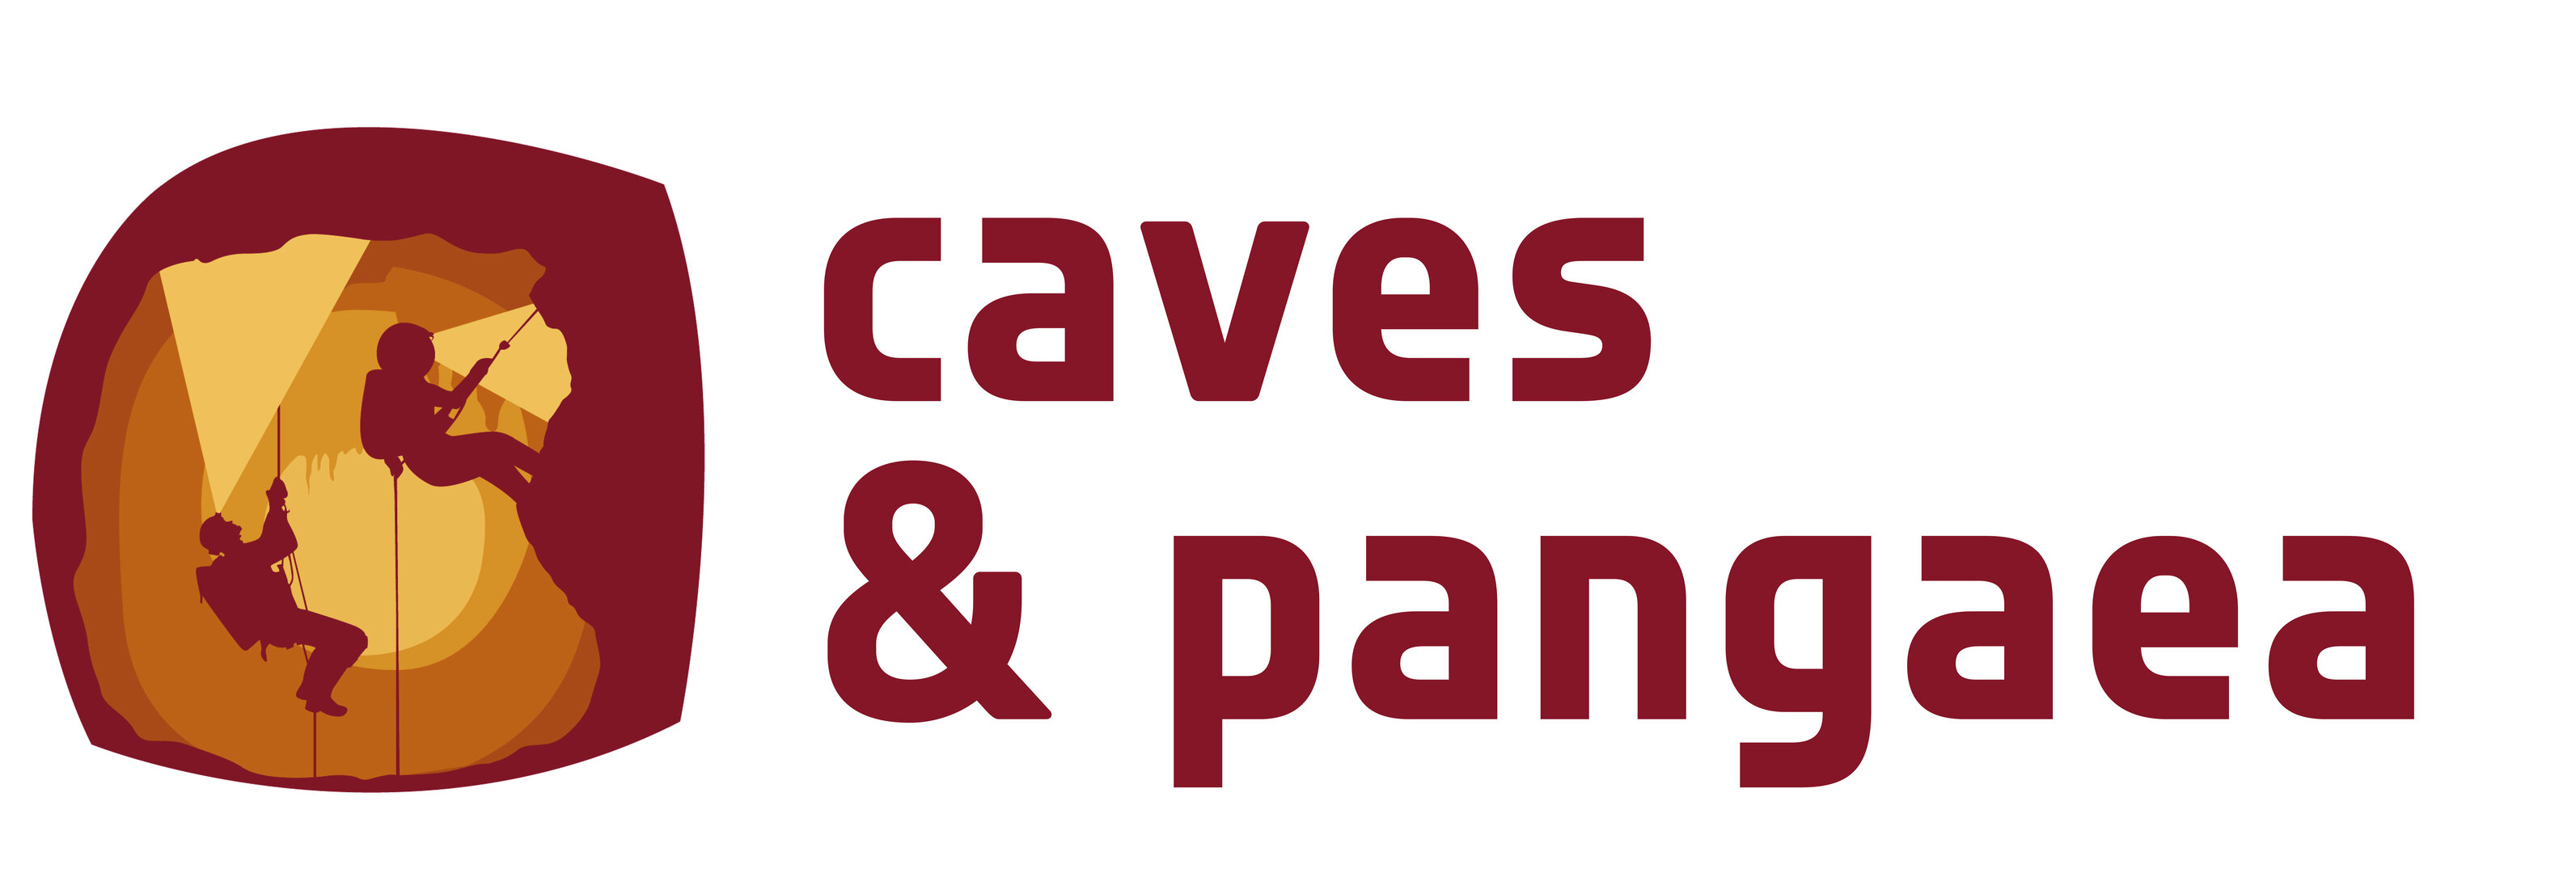 CAVES and Pangaea logo